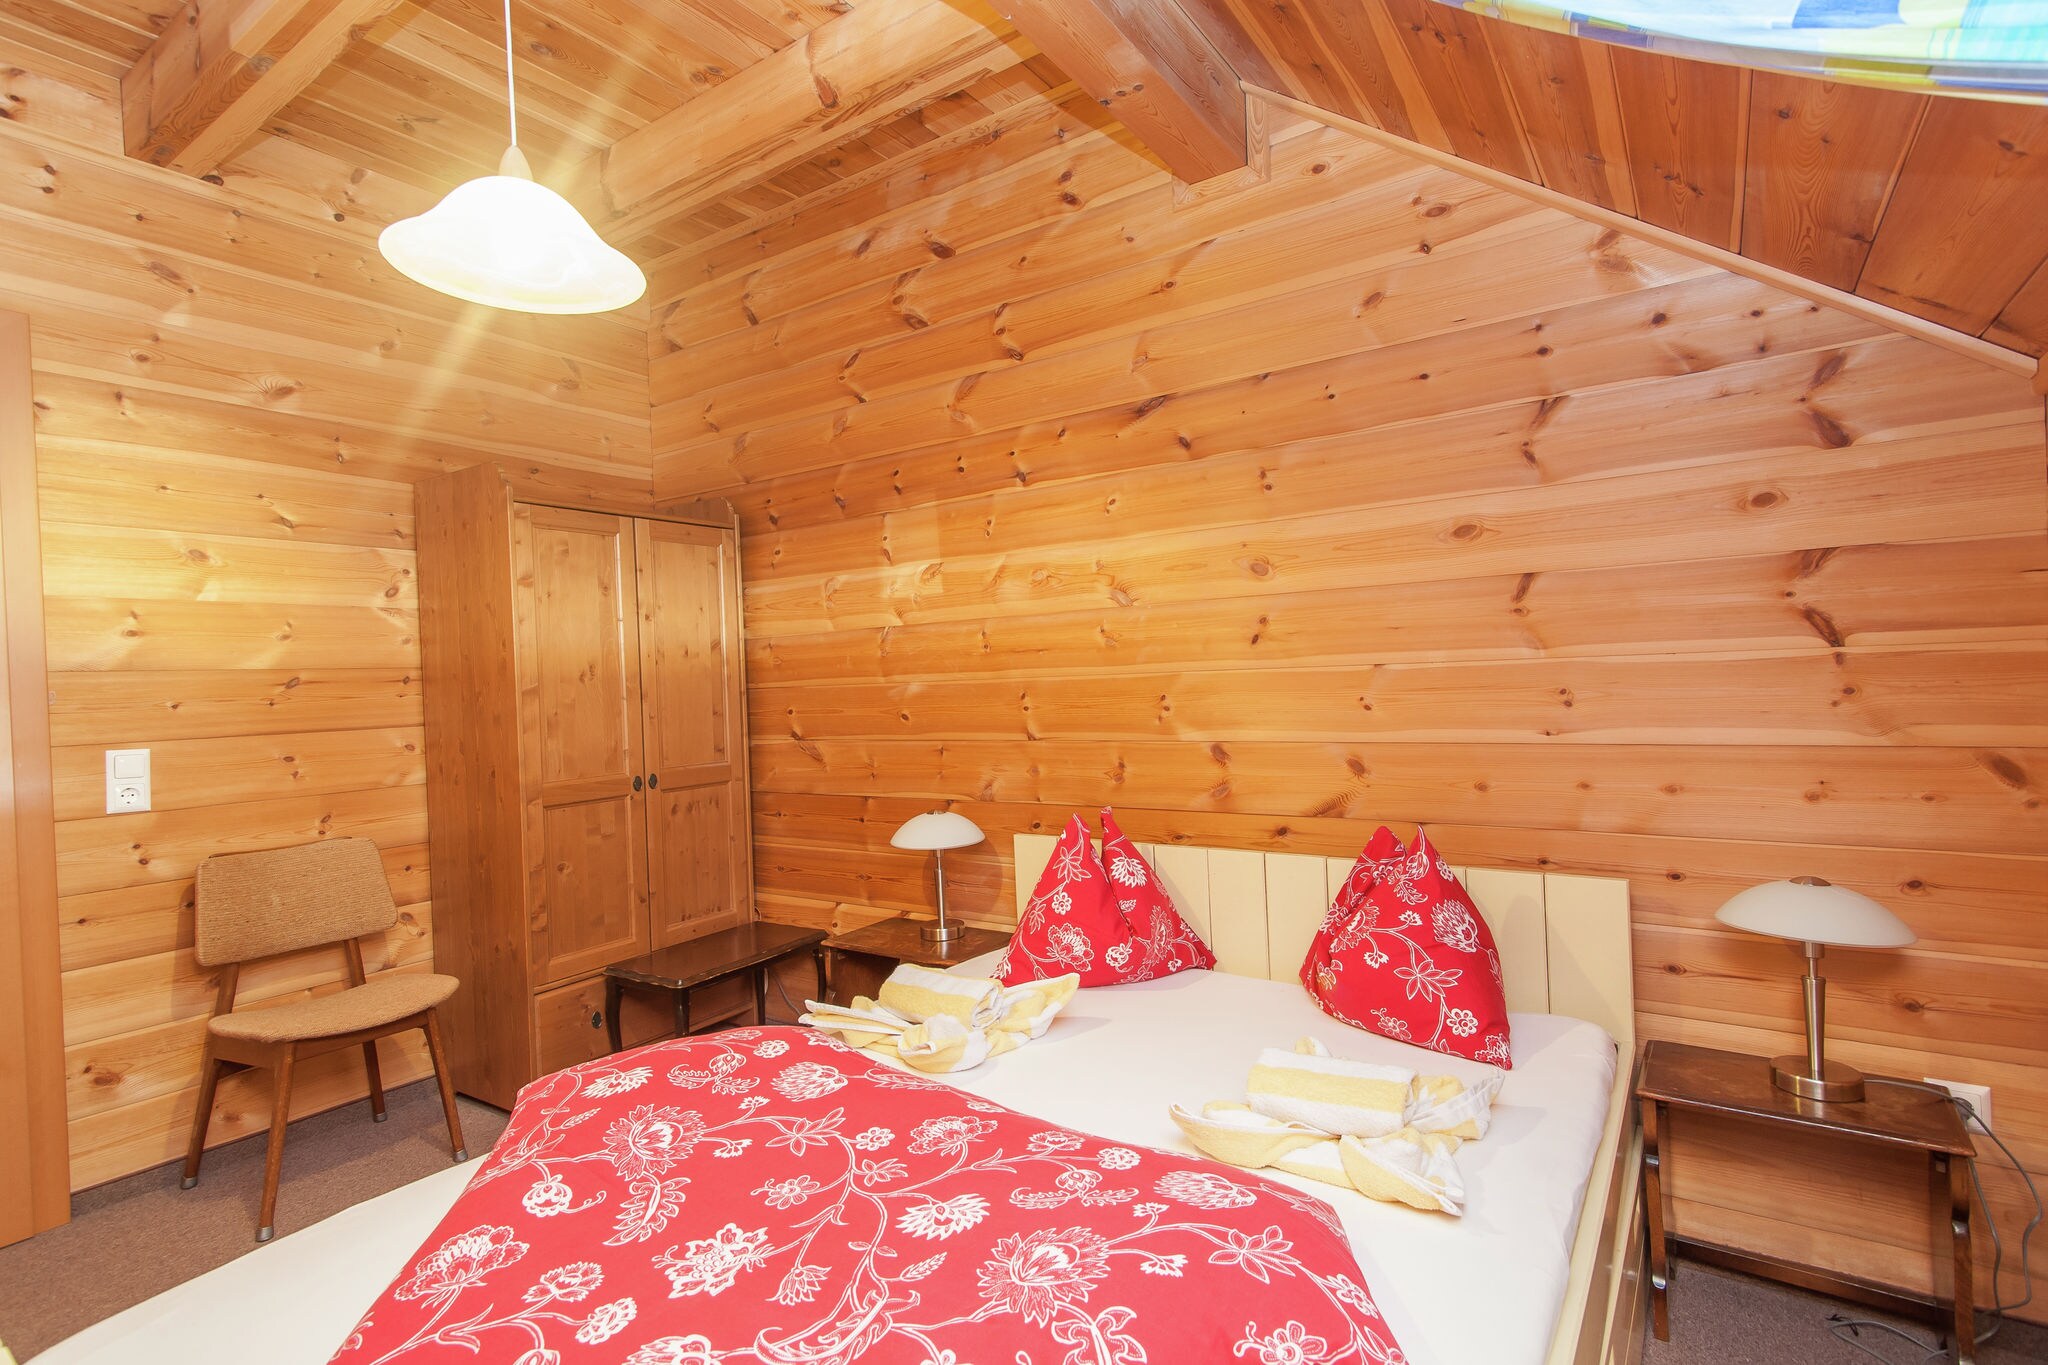 Chalet in Sankt Margarethen with sauna